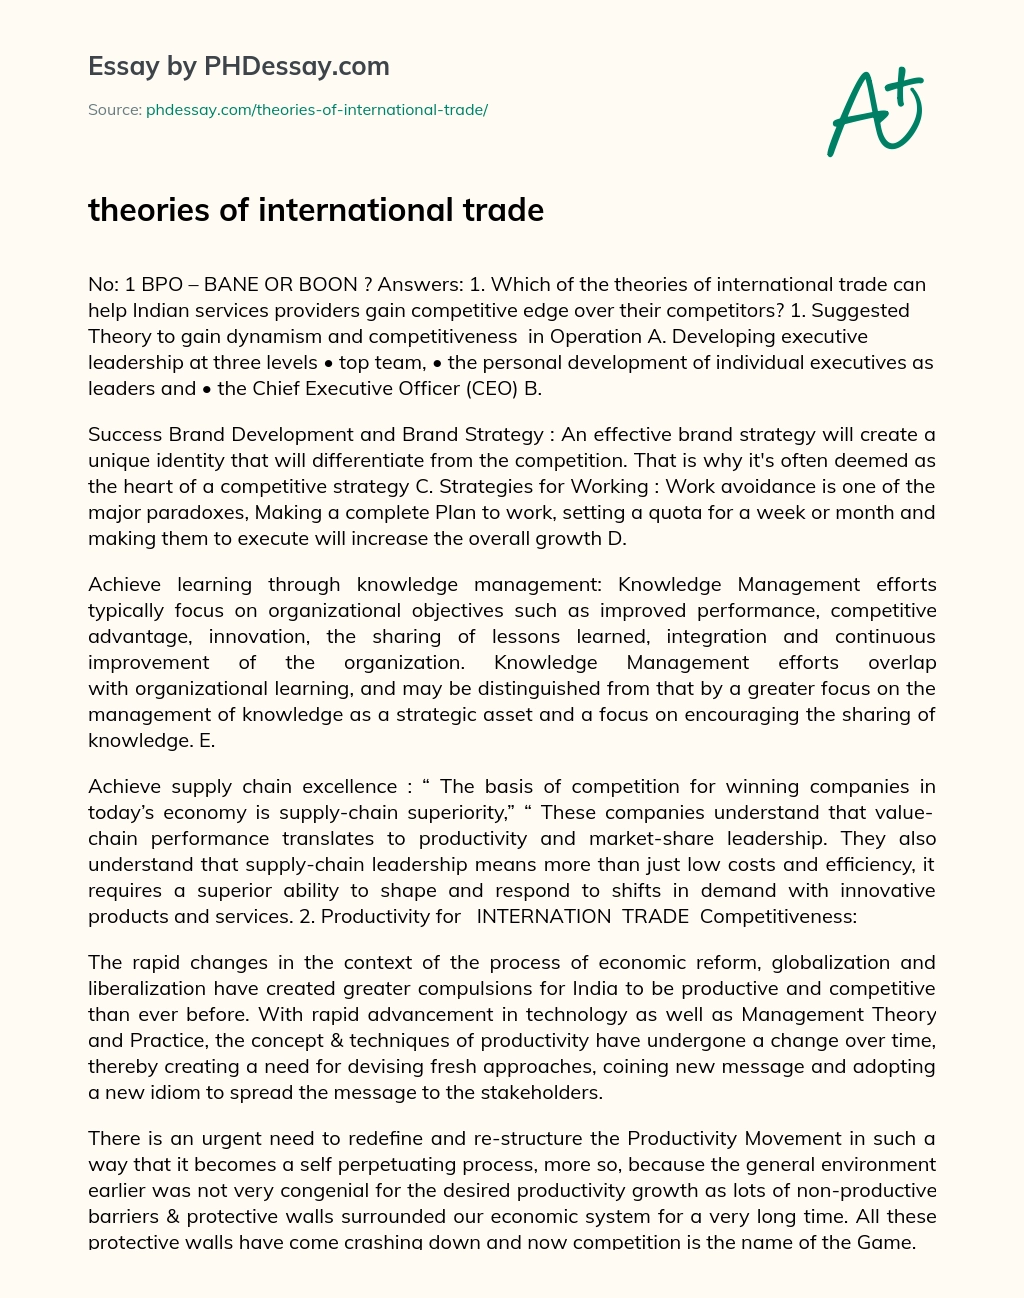 theories of international trade essay